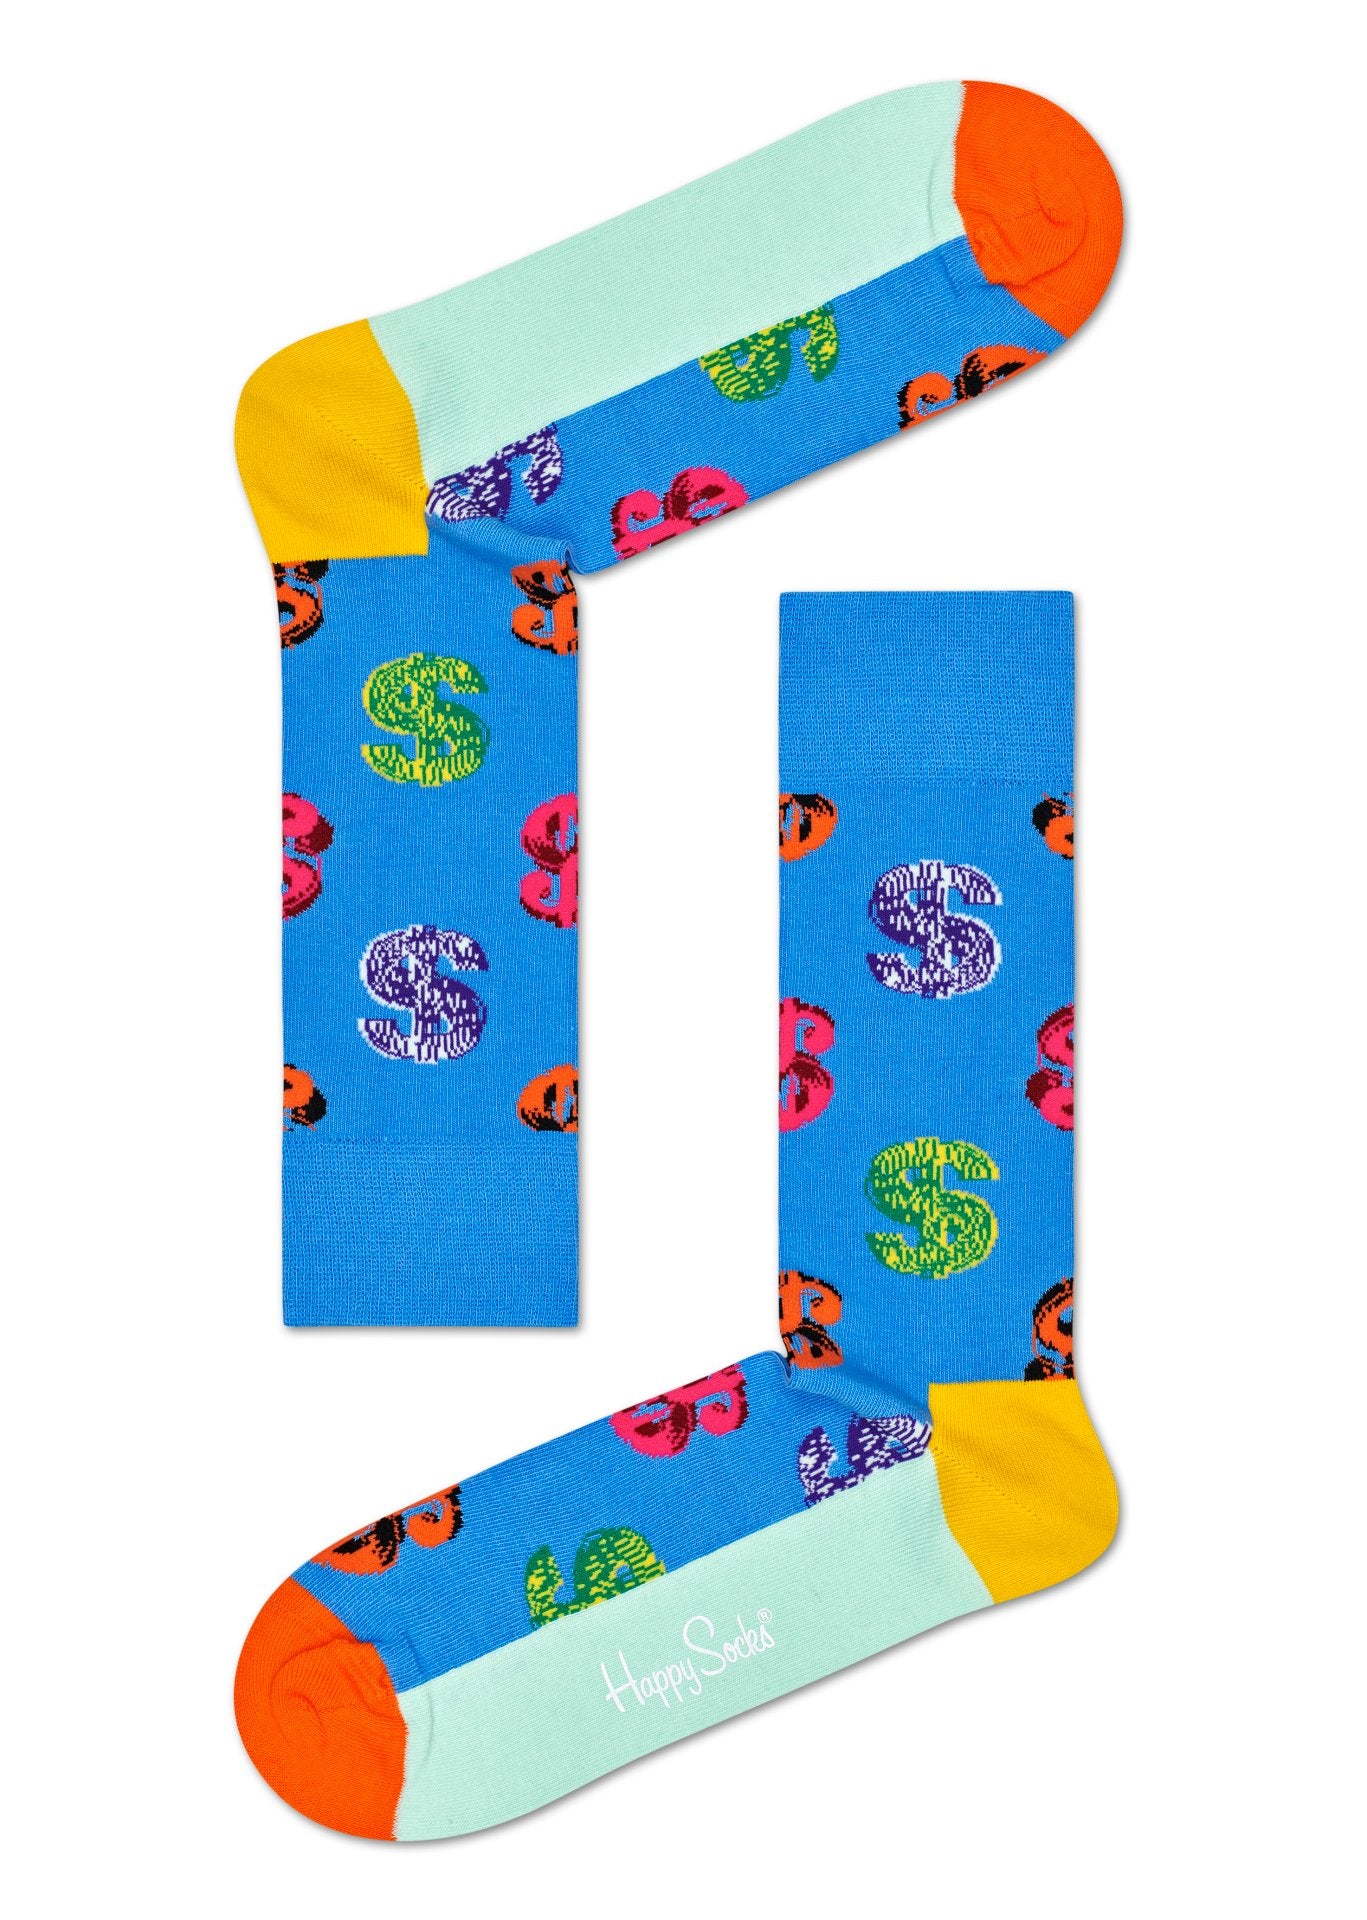 Modré ponožky se znakem dolaru z kolekce Happy Socks x Andy Warhol, vzor Dollar